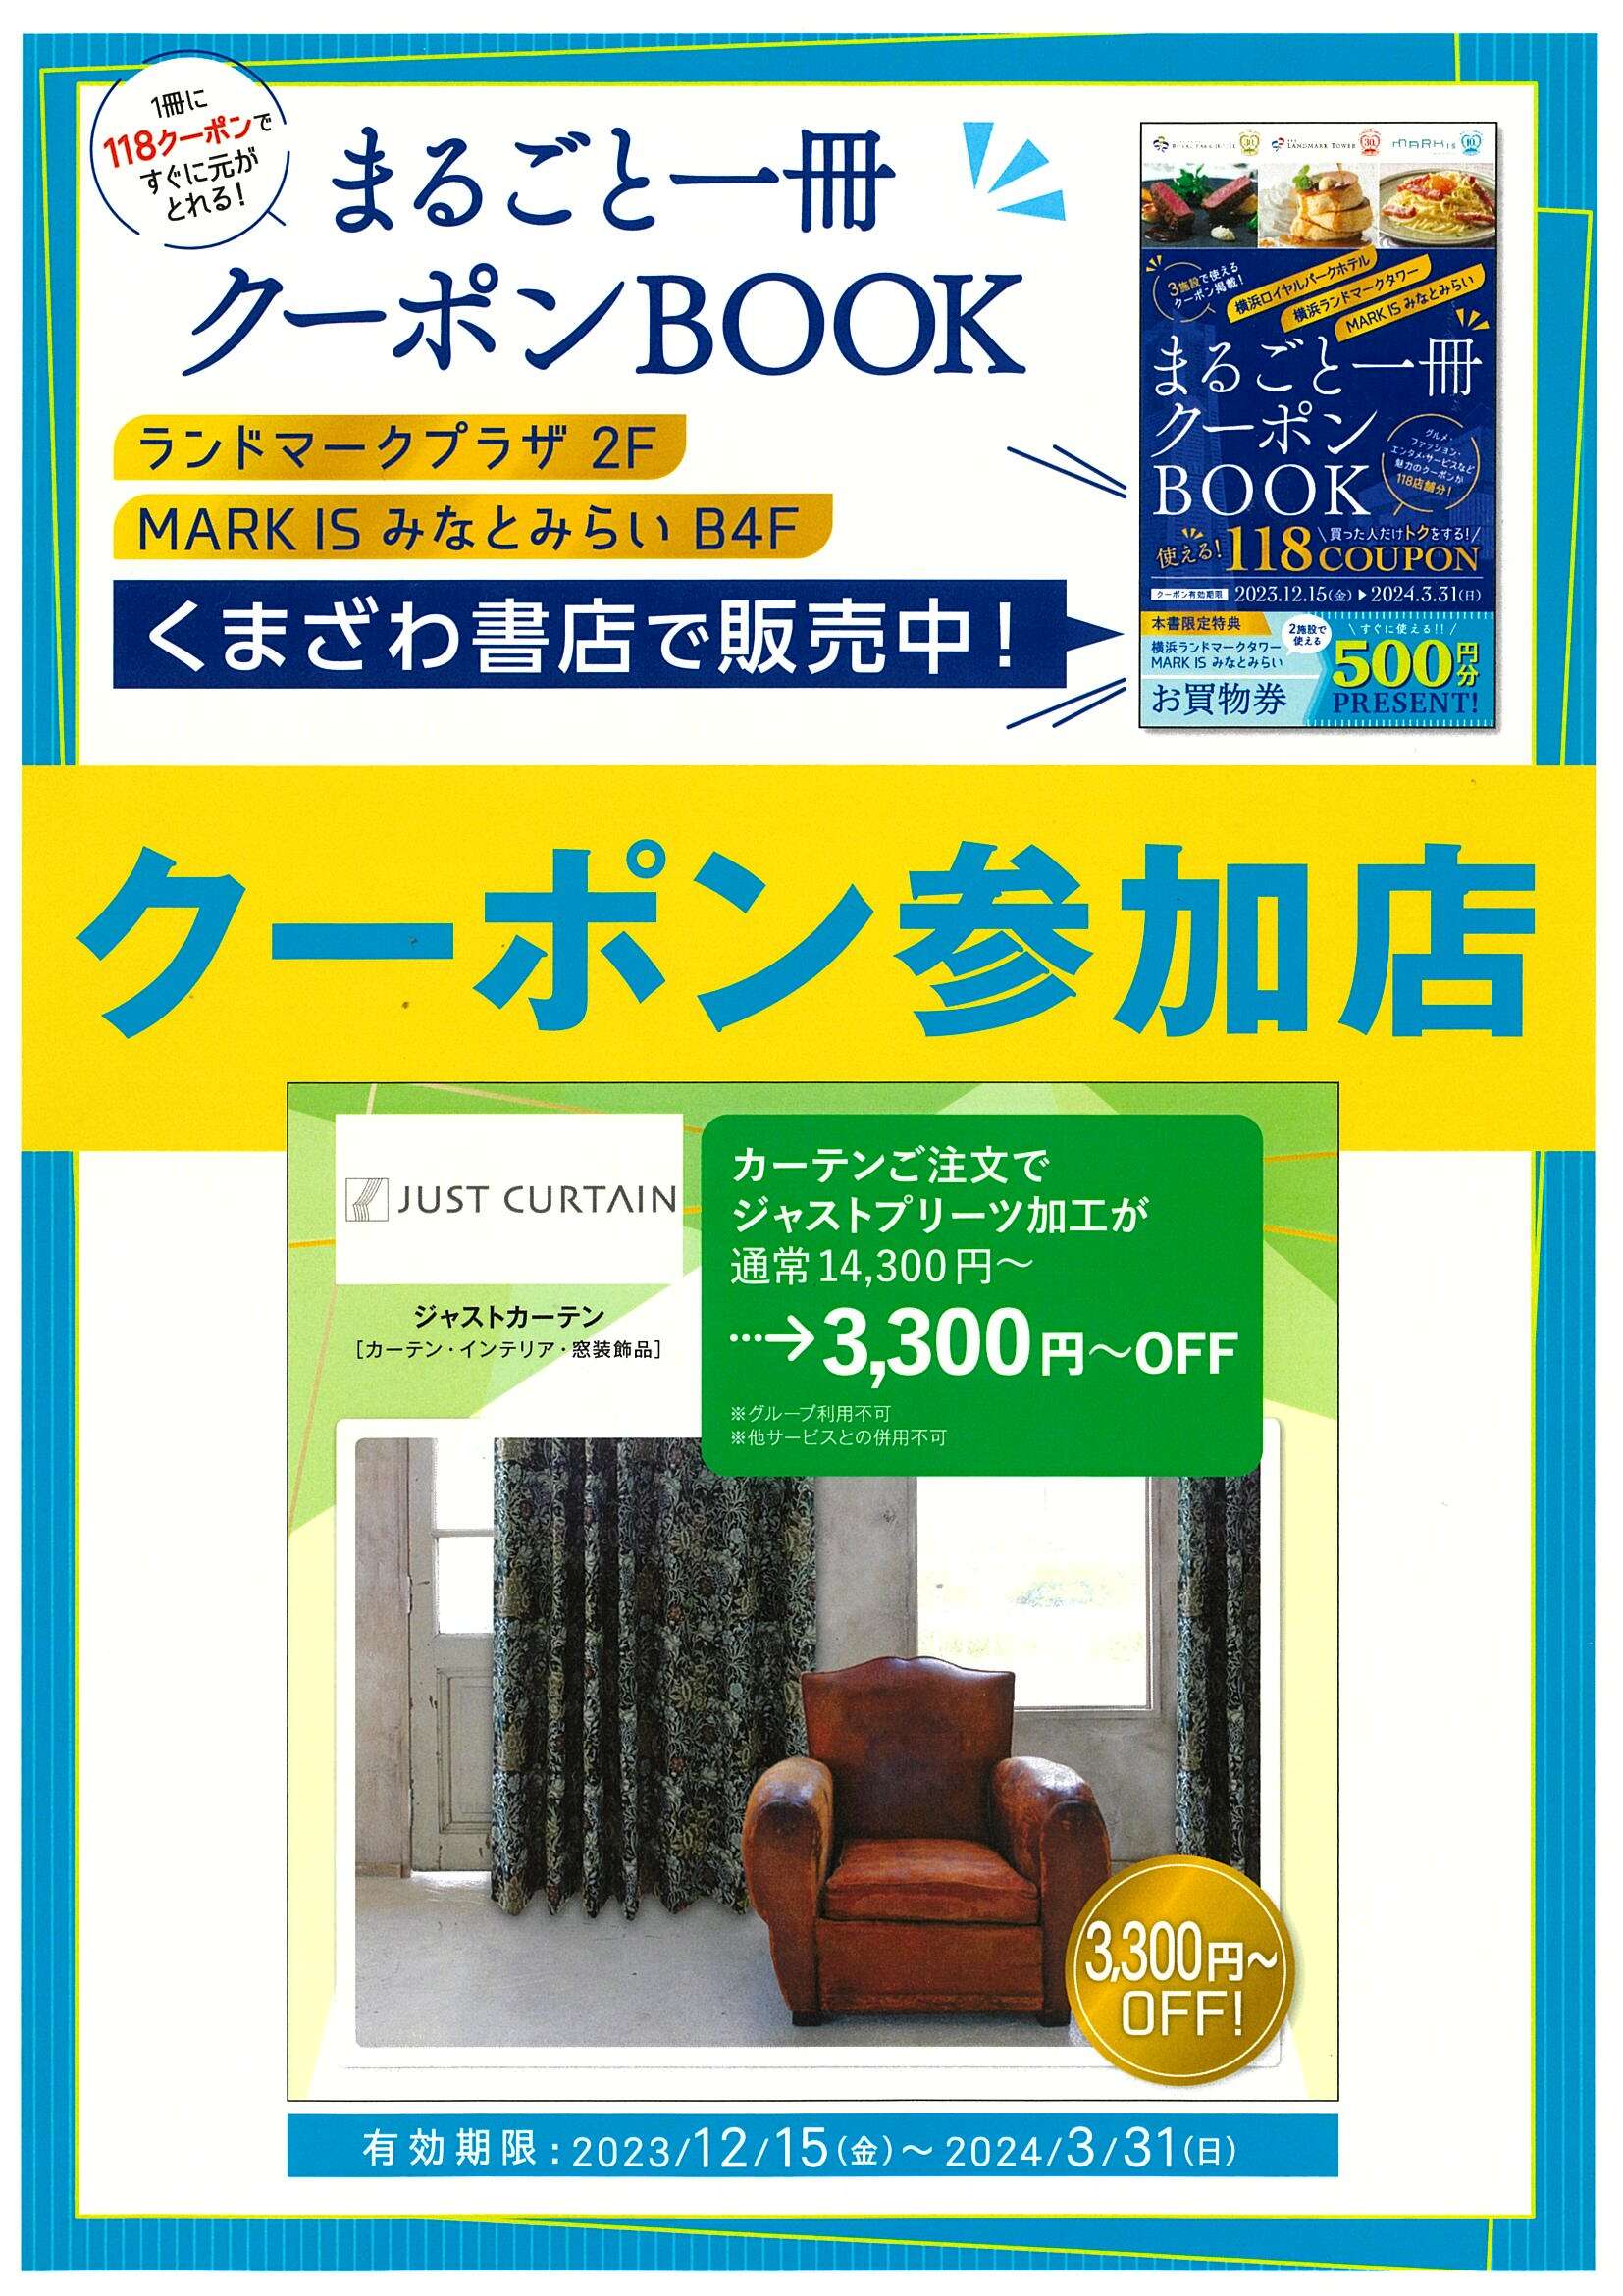 ジャストカーテン横浜ランドマーク店で「まるごと一冊クーポンBOOK」ご利用いただけます♪